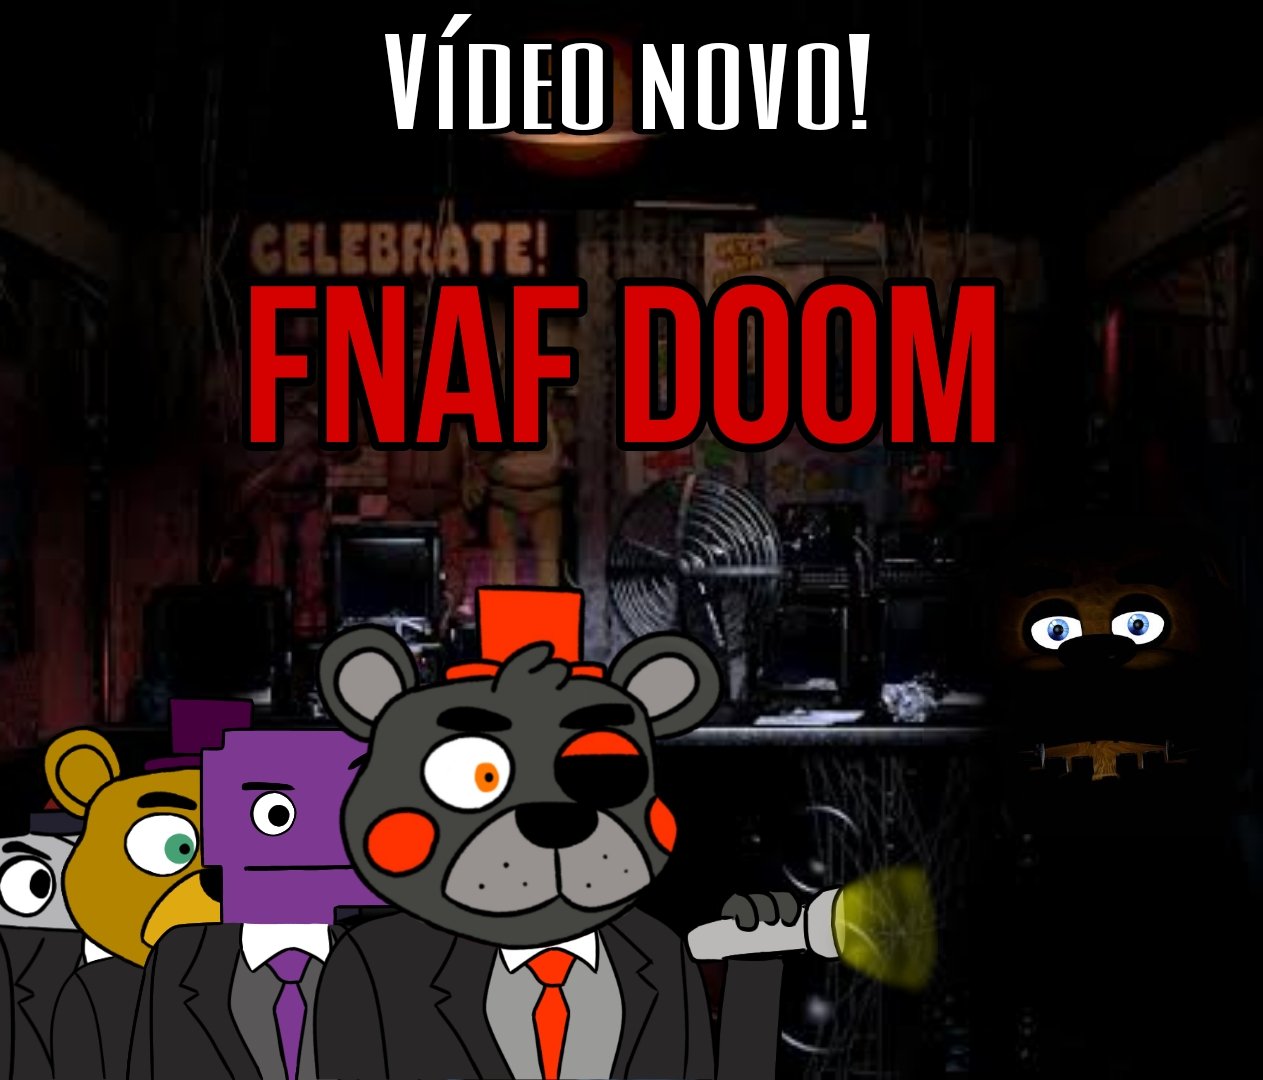 The Joy of Creation: Doom - A Noite do Golden Freddy - Noite 7 e Final  (FNAF Doom) 